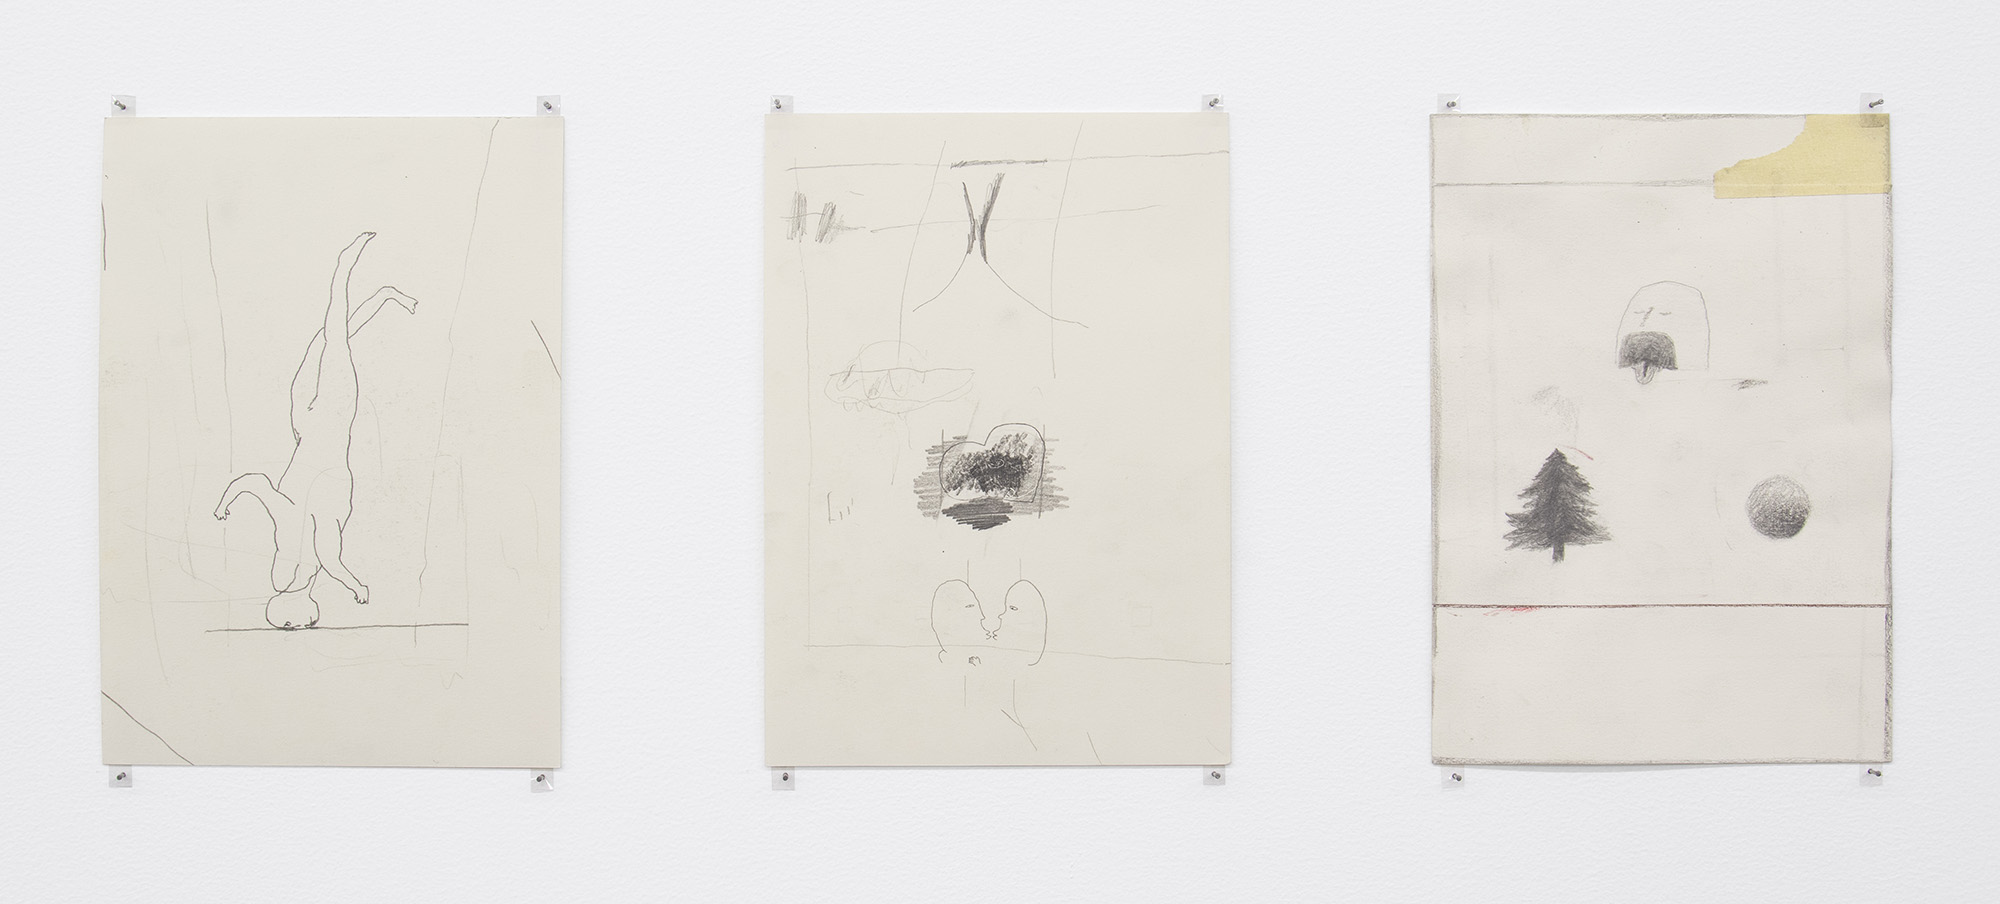 Manuel Gröger, Untitled, Ink, graphite, tape on paper, 23 x 17 cm, 2017 - 19